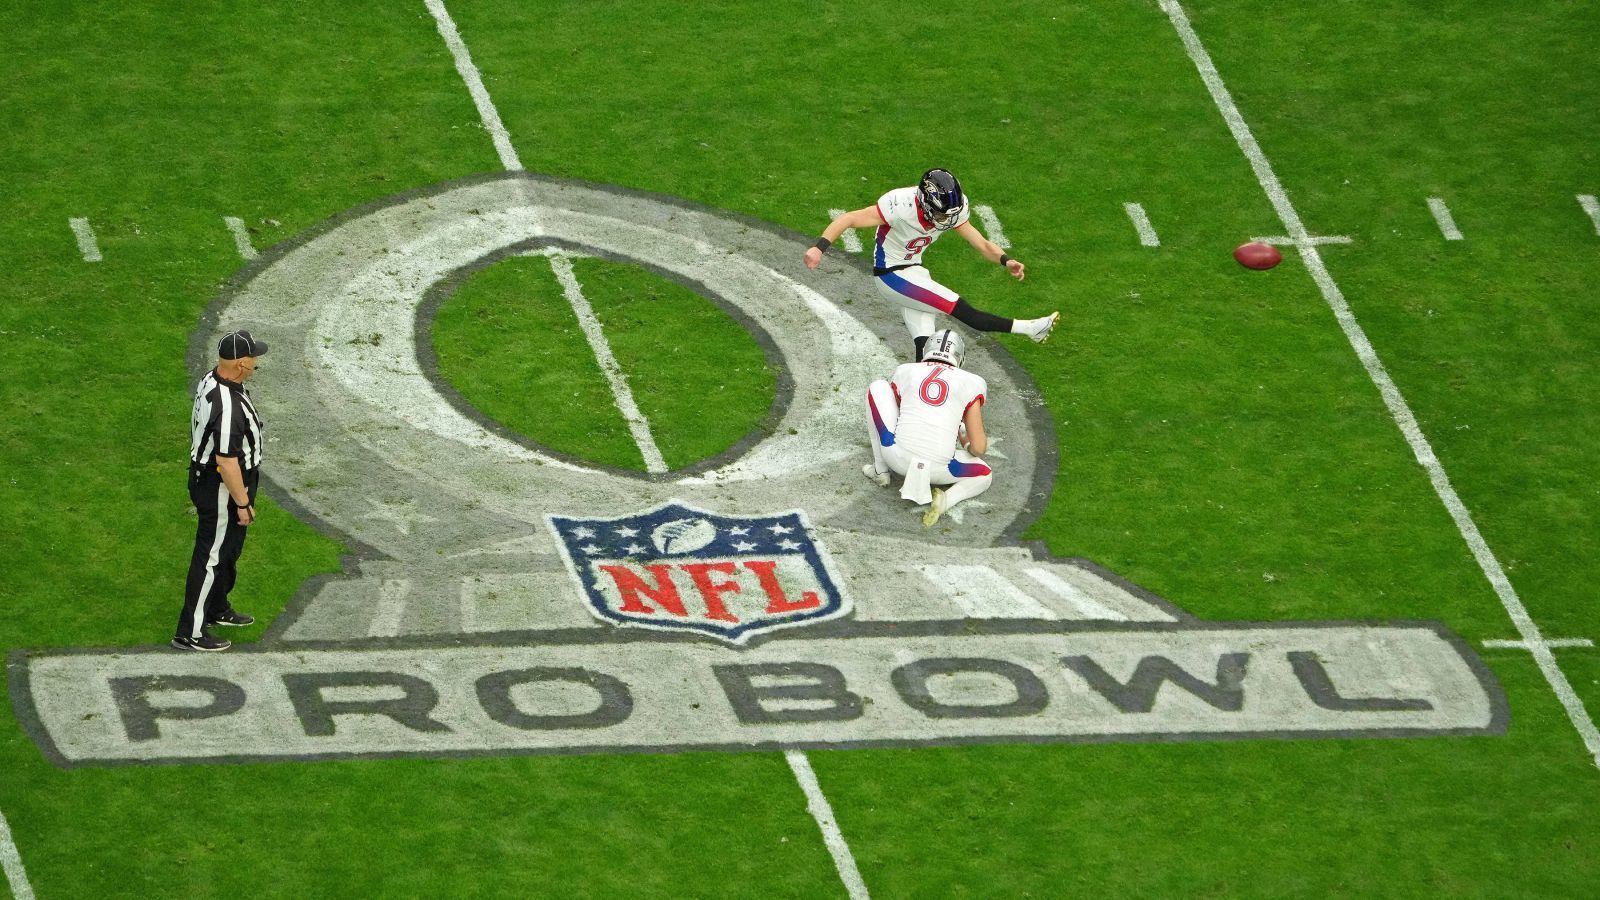 
                <strong>Pro Bowl 2023: Diese Spieler wurden reingewählt</strong><br>
                Jährlich im Dezember werden die besten Spieler der NFL mit einer Nominierung zum Pro Bowl ausgezeichnet, dem All Star Game der NFL. Die Stimmen kommen zu jeweils einem Drittel von Fans, Trainern und Spielern. Aufgrund des Super Bowl und wegen Verletzungen gibt es regelmäßig Nachnominierungen - somit schaffte es auch Amon-Ra St. Brown in den Pro Bowl. ran zeigt alle Spieler, die an diesem Wochenende bei den Pro-Bowl-Spielen teilnehmen dürfen.
              